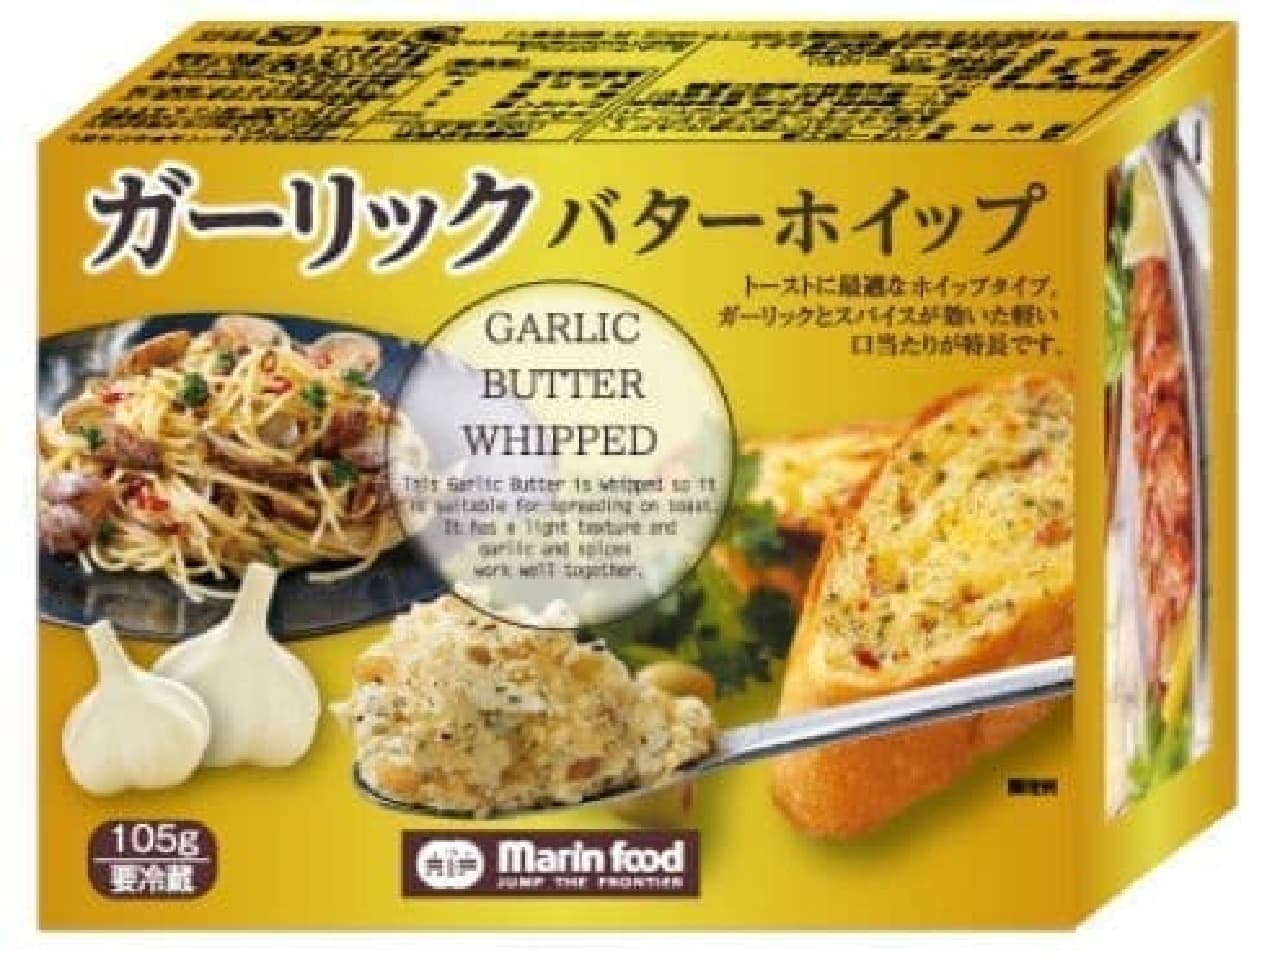 Marin food "garlic butter whip"